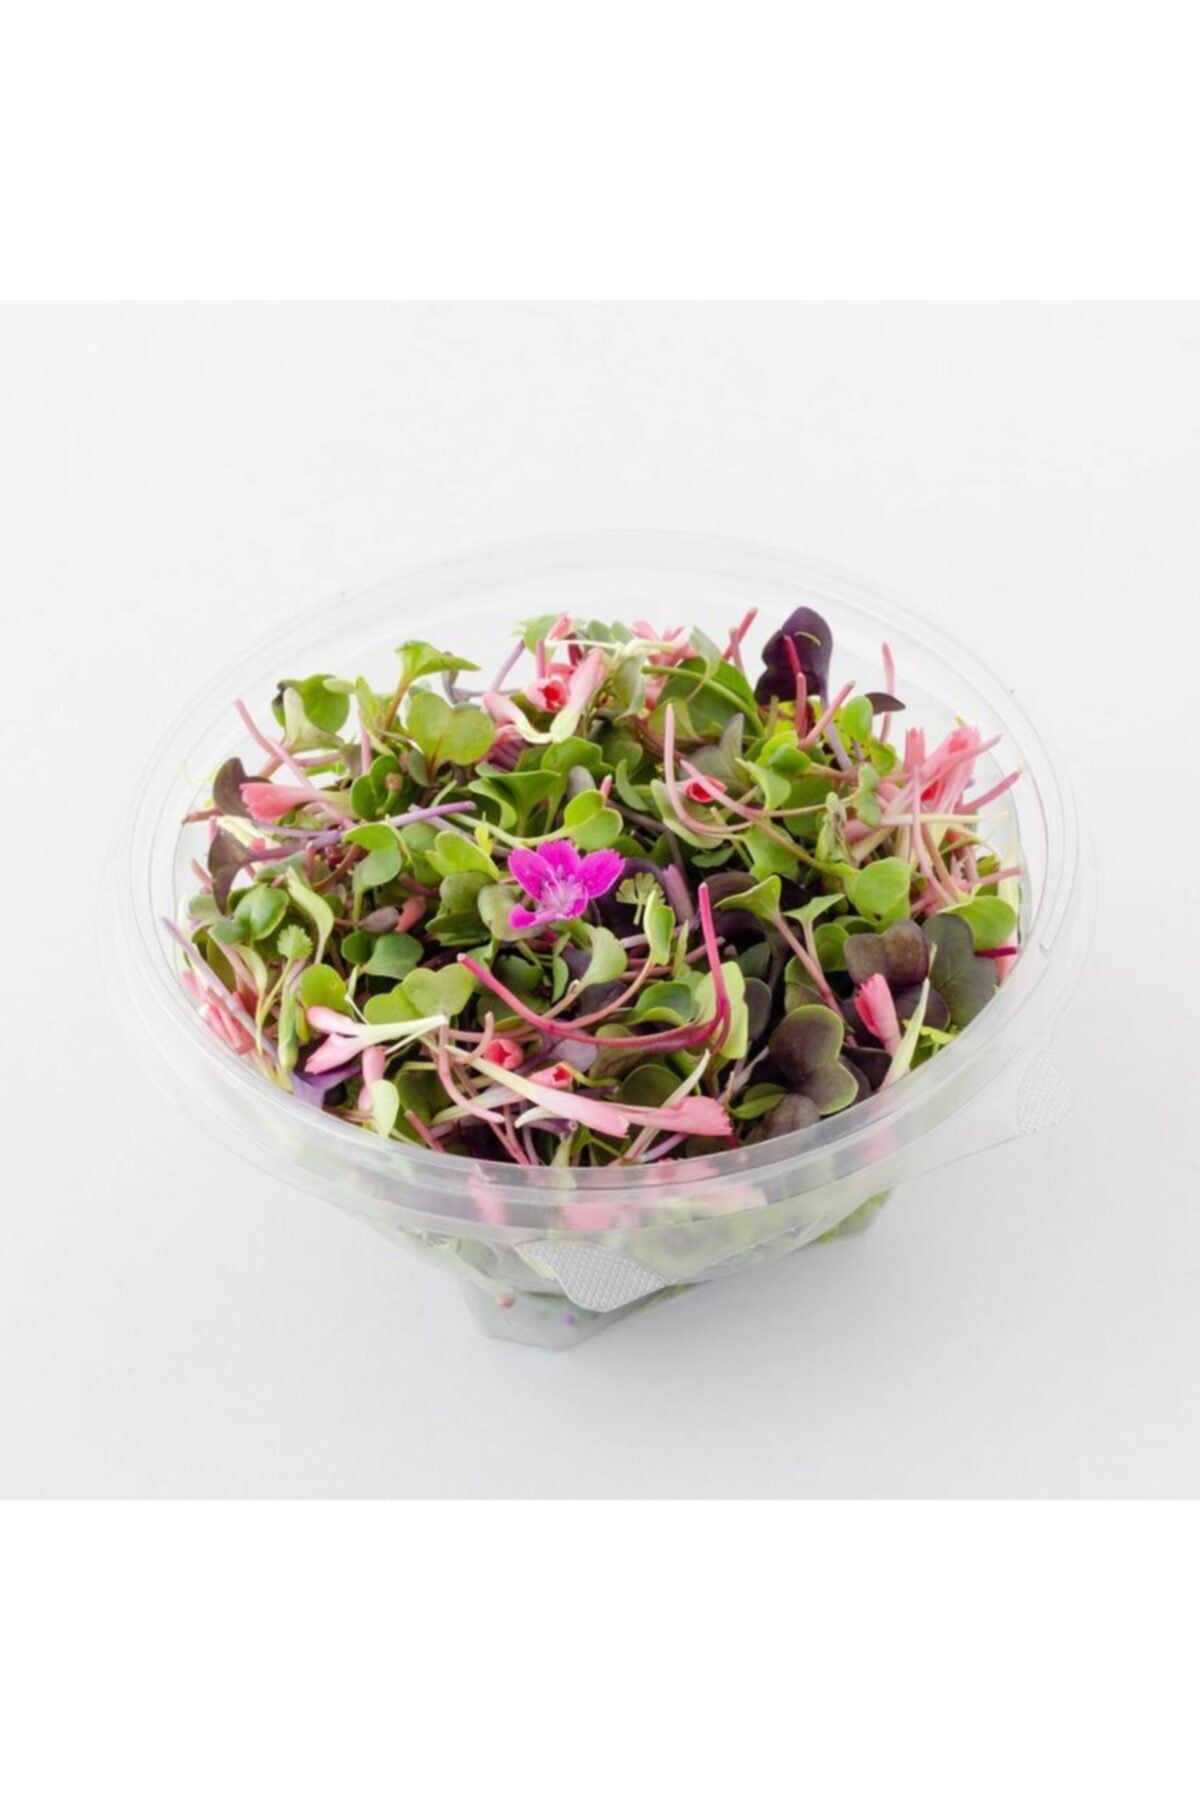 Mimi Çiftliği Yemeye Hazır Filiz Salatası - Fit Salata